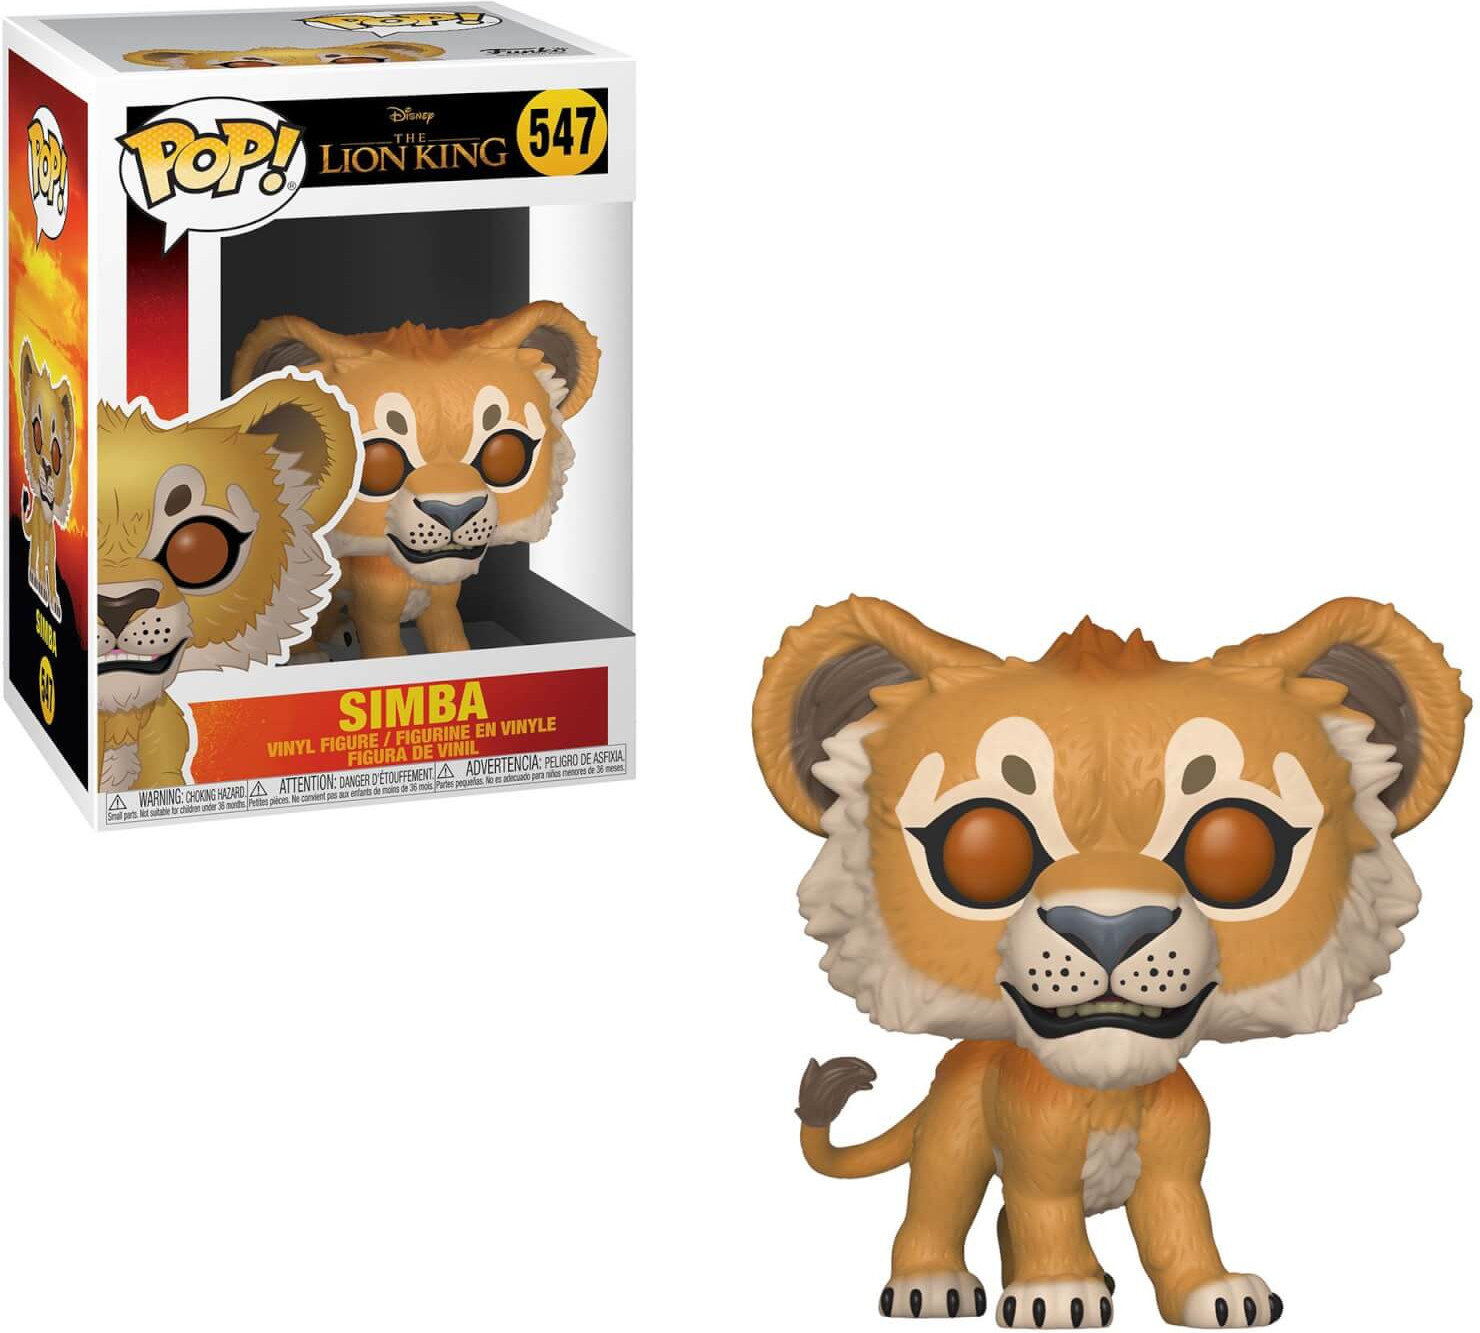 verkouden worden Eenheid potlood Nedgame gameshop: Disney The Lion King (Live) Funko Pop Vinyl: Simba (547)  (Merchandise) kopen